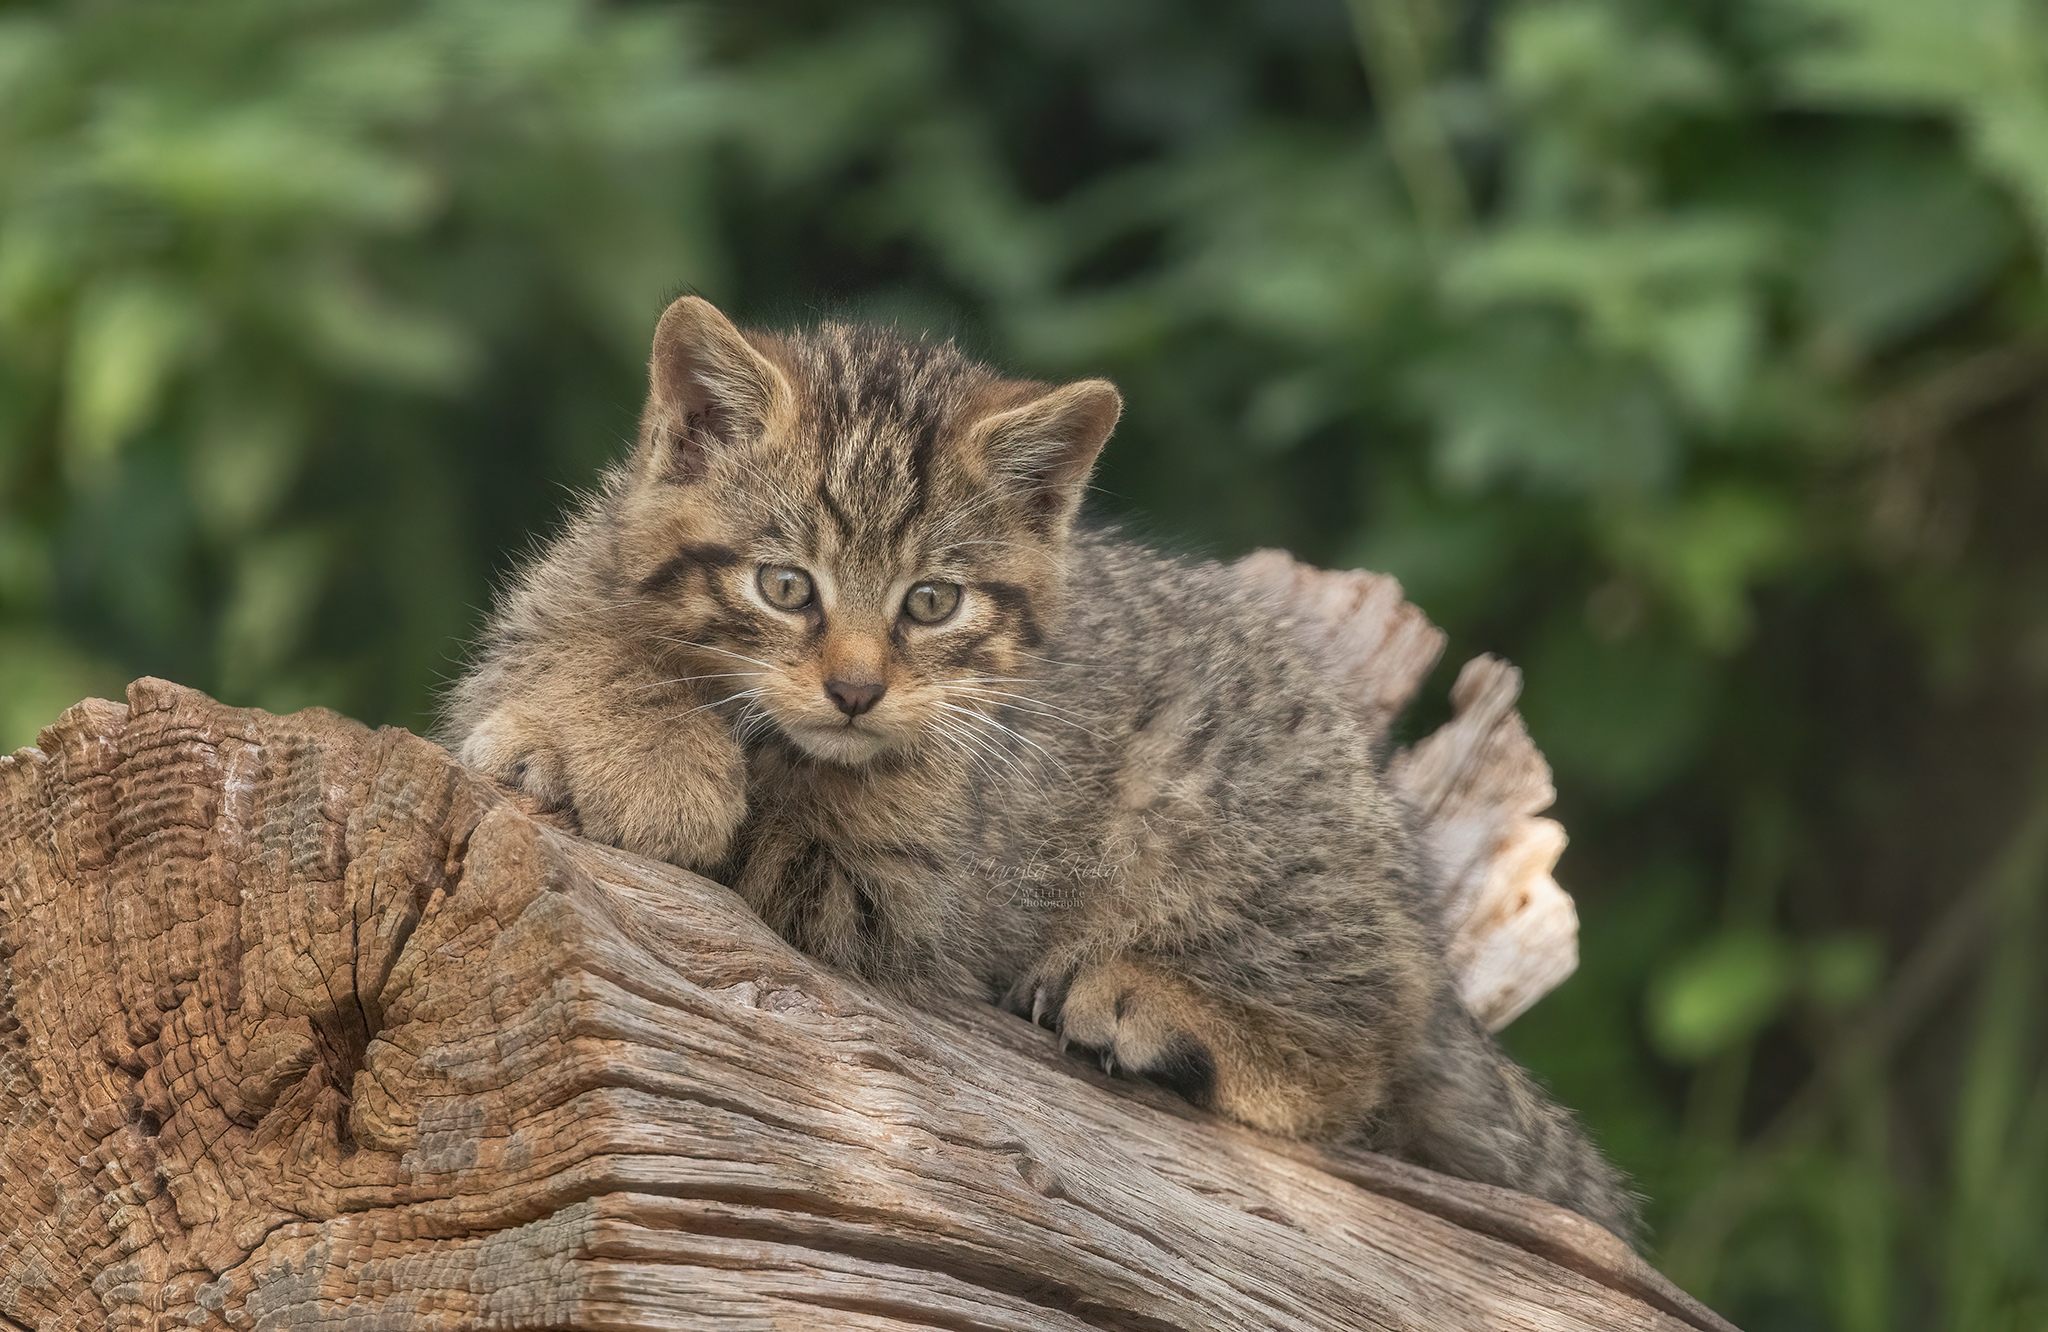 scottish wildcat, wildcat, animals, kittens, wildlife, nature, canon, MARIA KULA